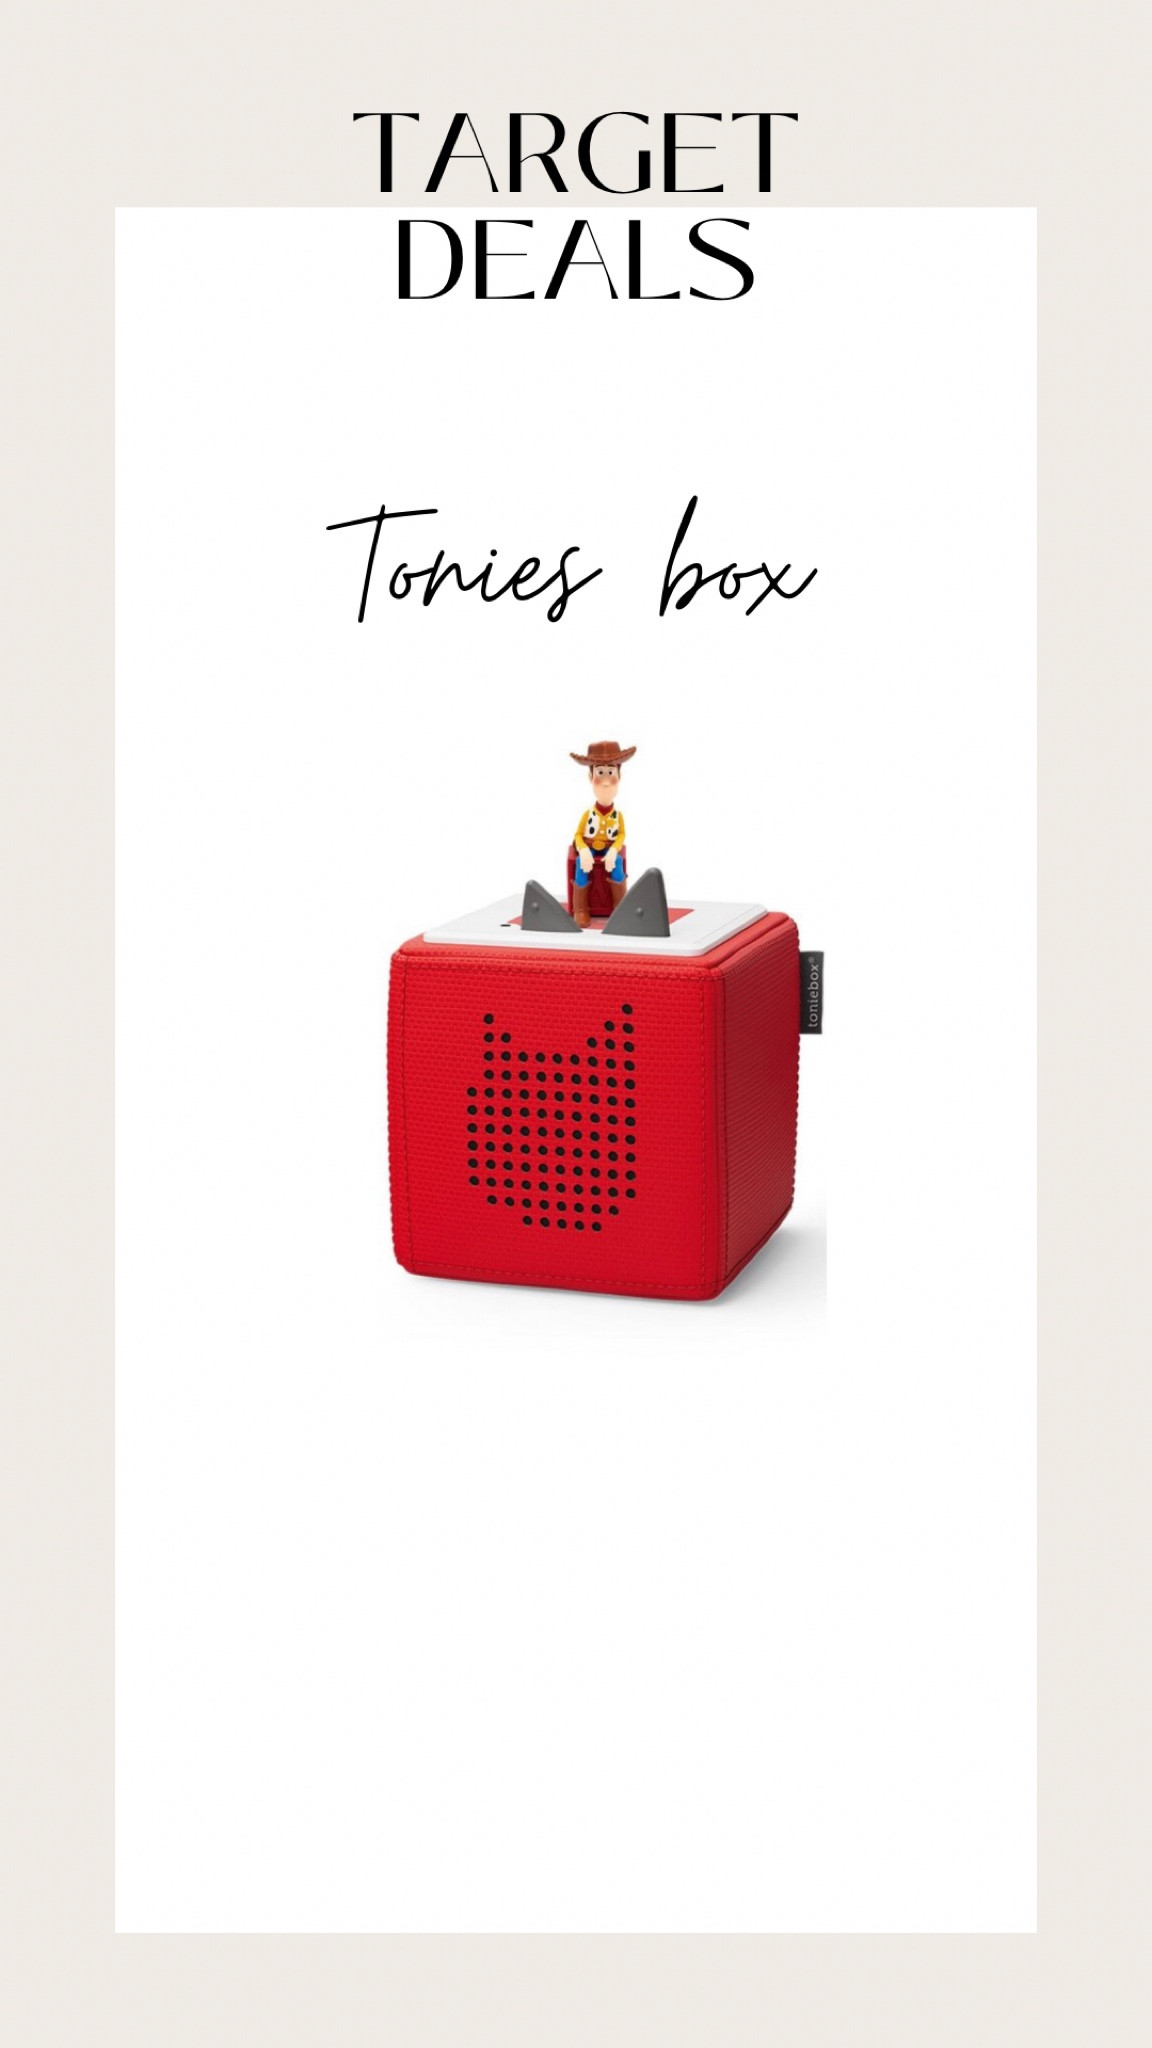 Tonies Disney And Pixar Mr. Incredible Audio Play Figurine : Target